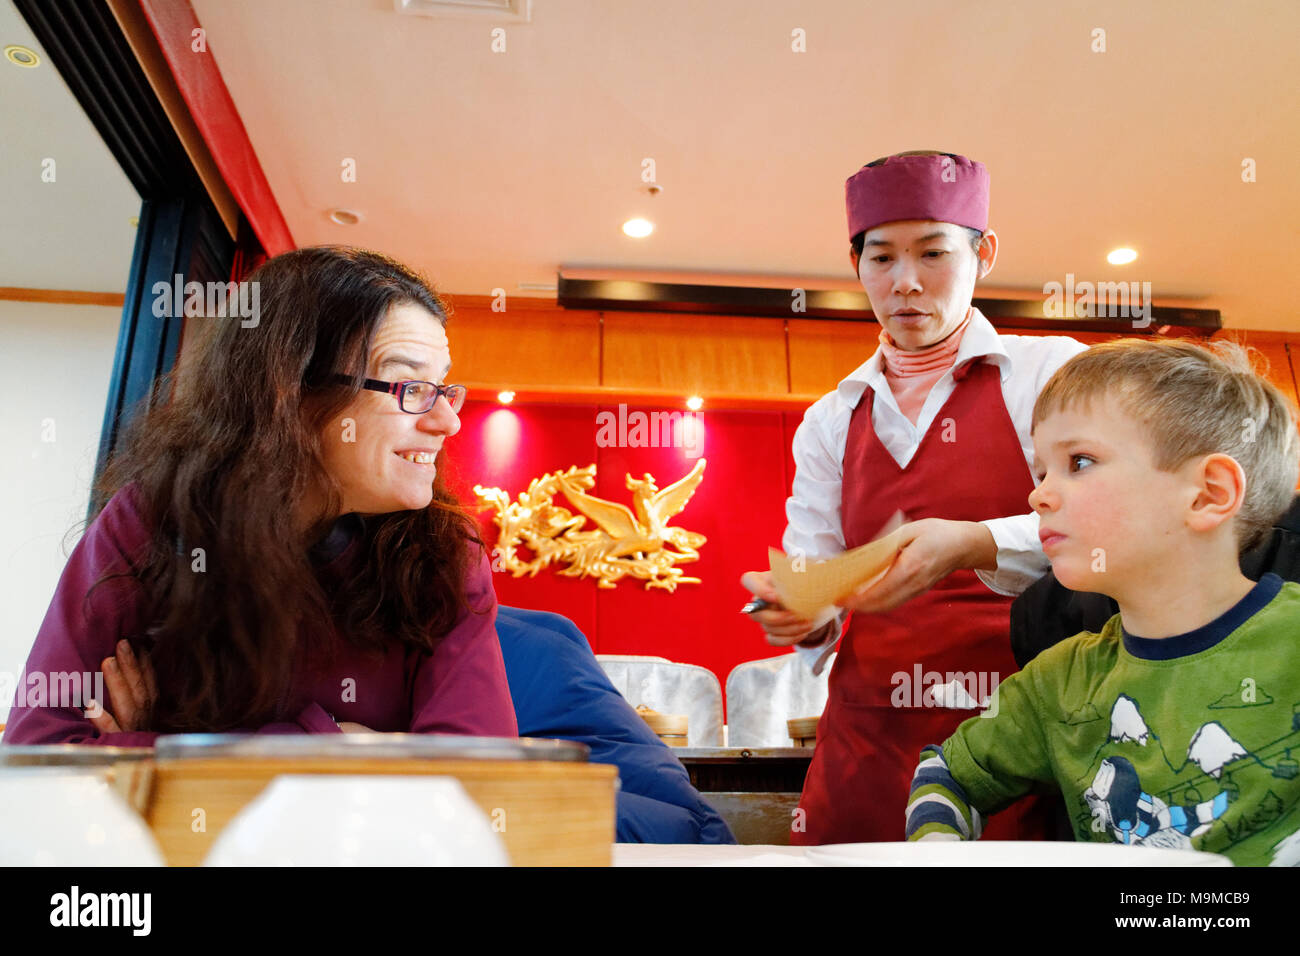 Eine Mutter an ihr fünf Jahre alter Sohn übertragen, wie Dim Sum Spezialitäten werden in einem chinesischen Restaurant serviert Stockfoto